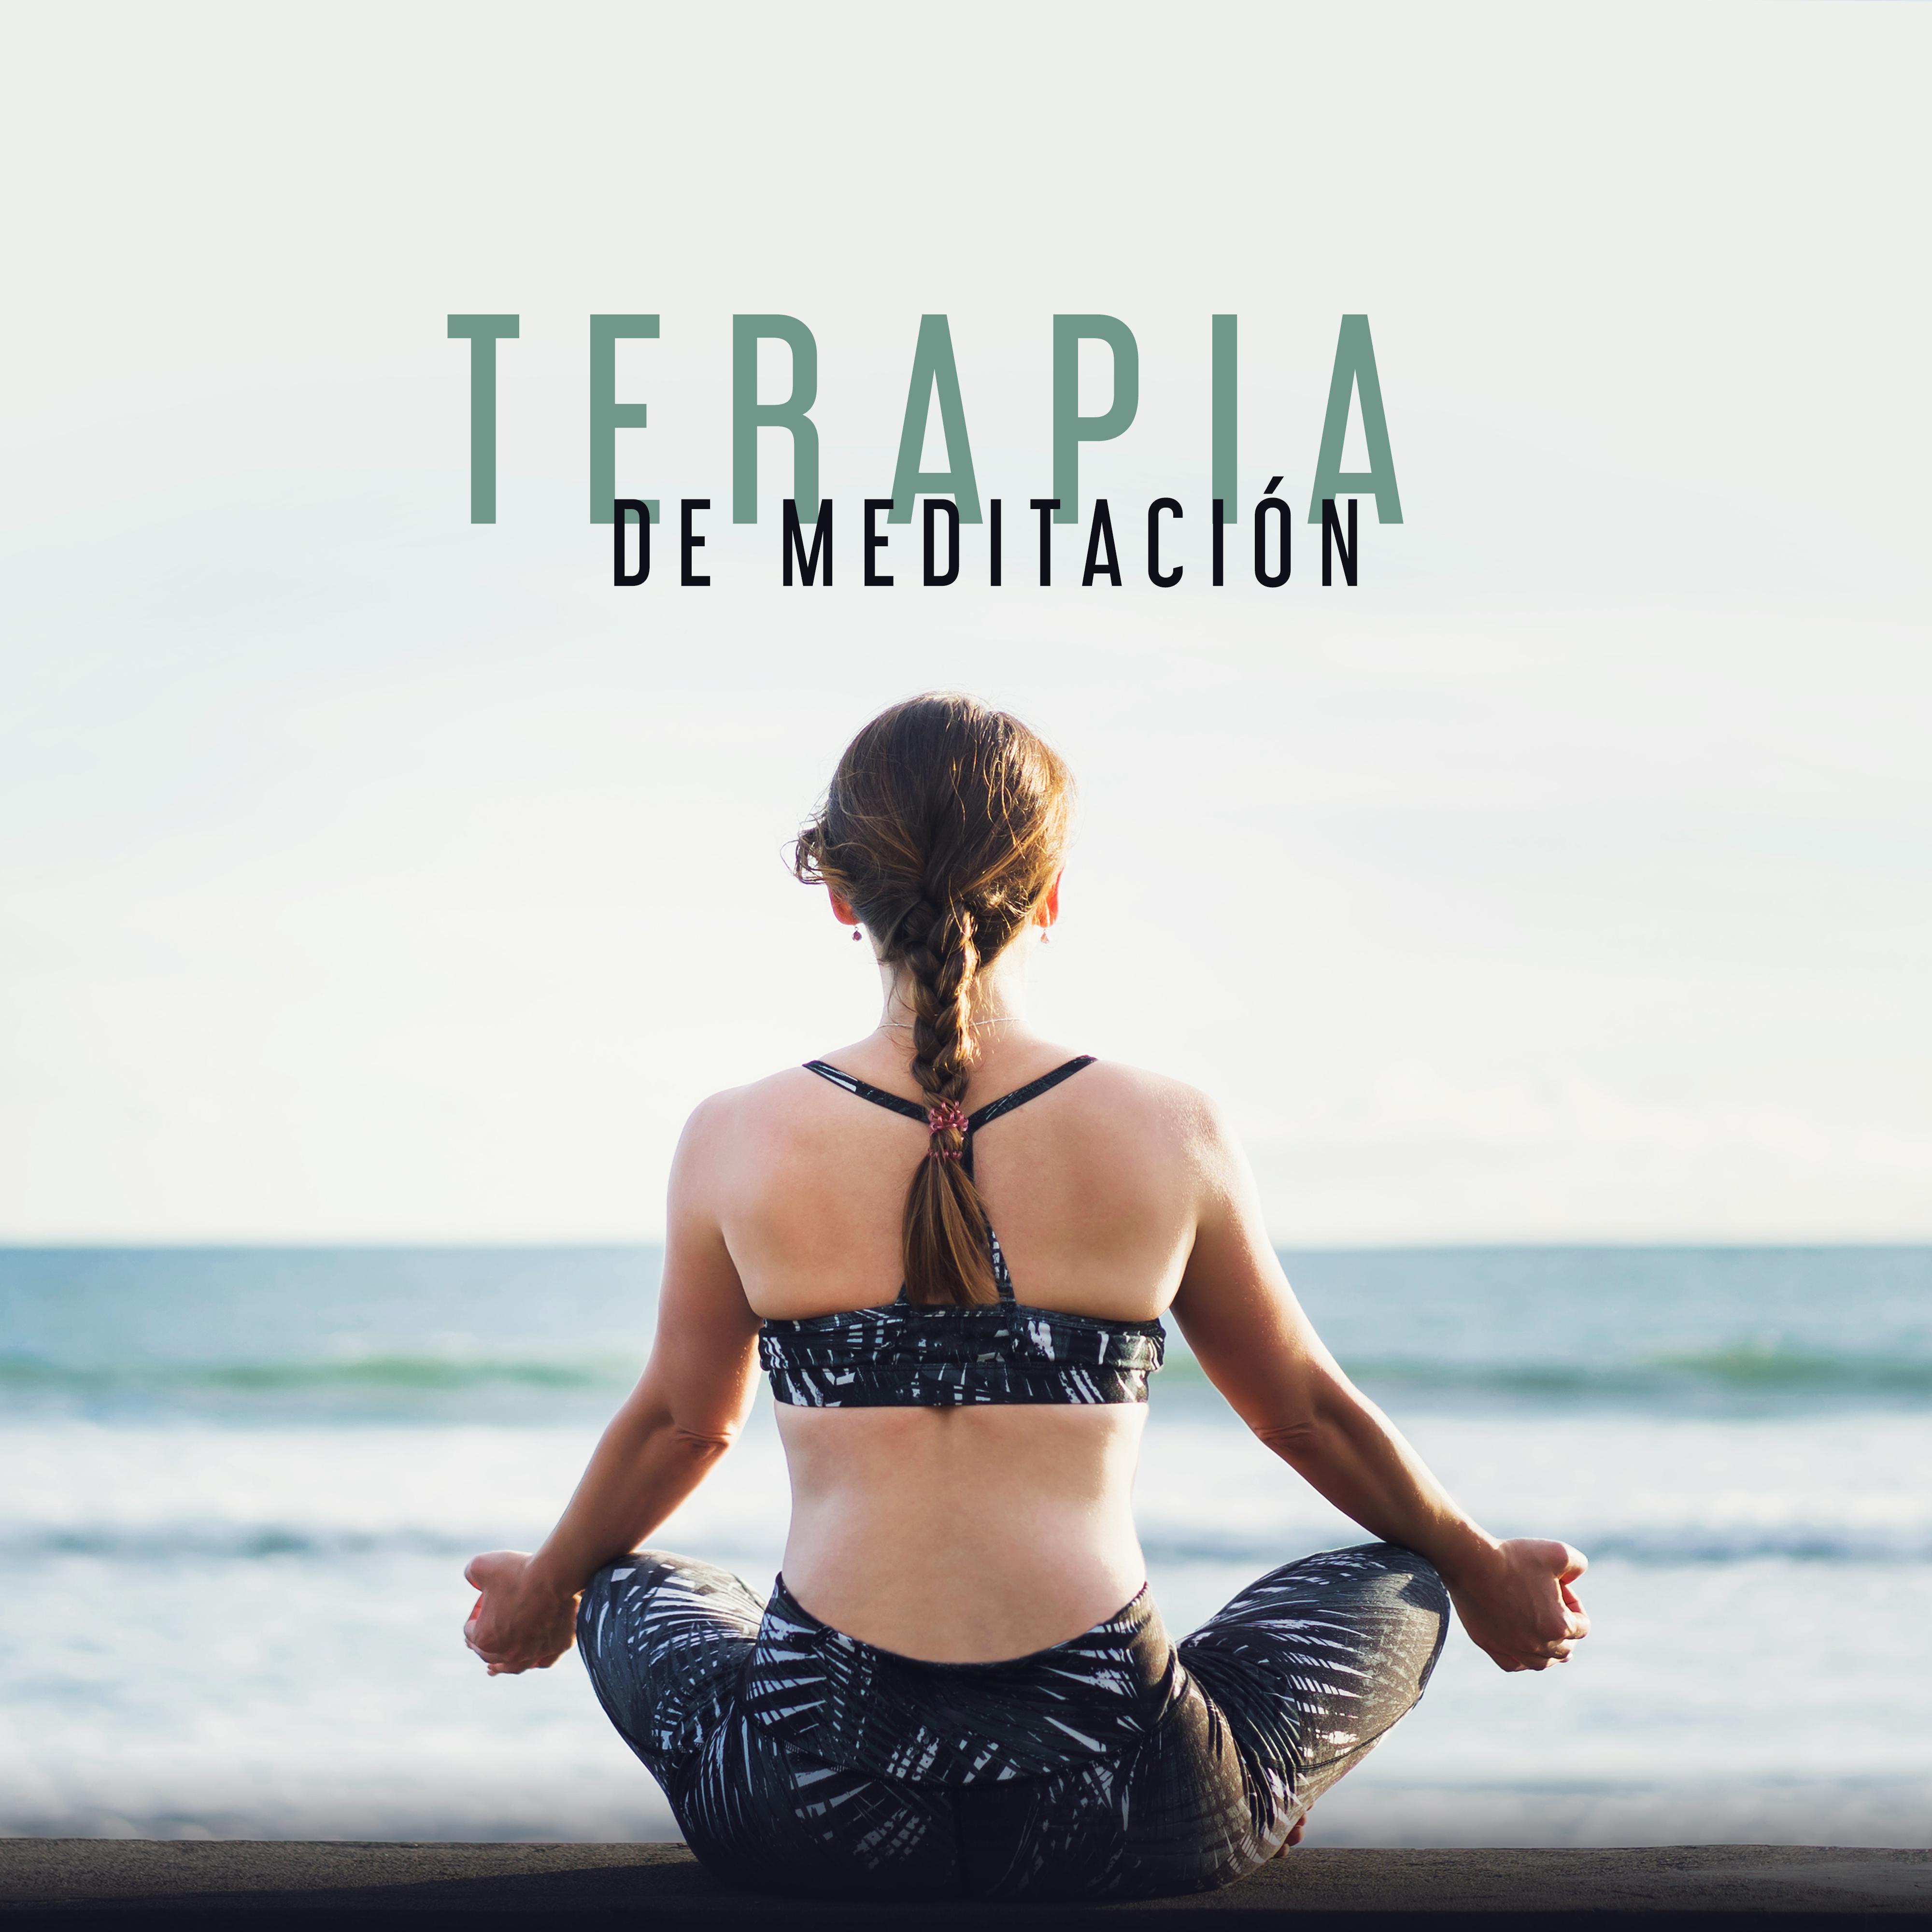 Terapia de Meditación - Musica de Yoga, Relajación Profunda, Calma Interior, Armonía, Zen Yoga, Música para Calmarse